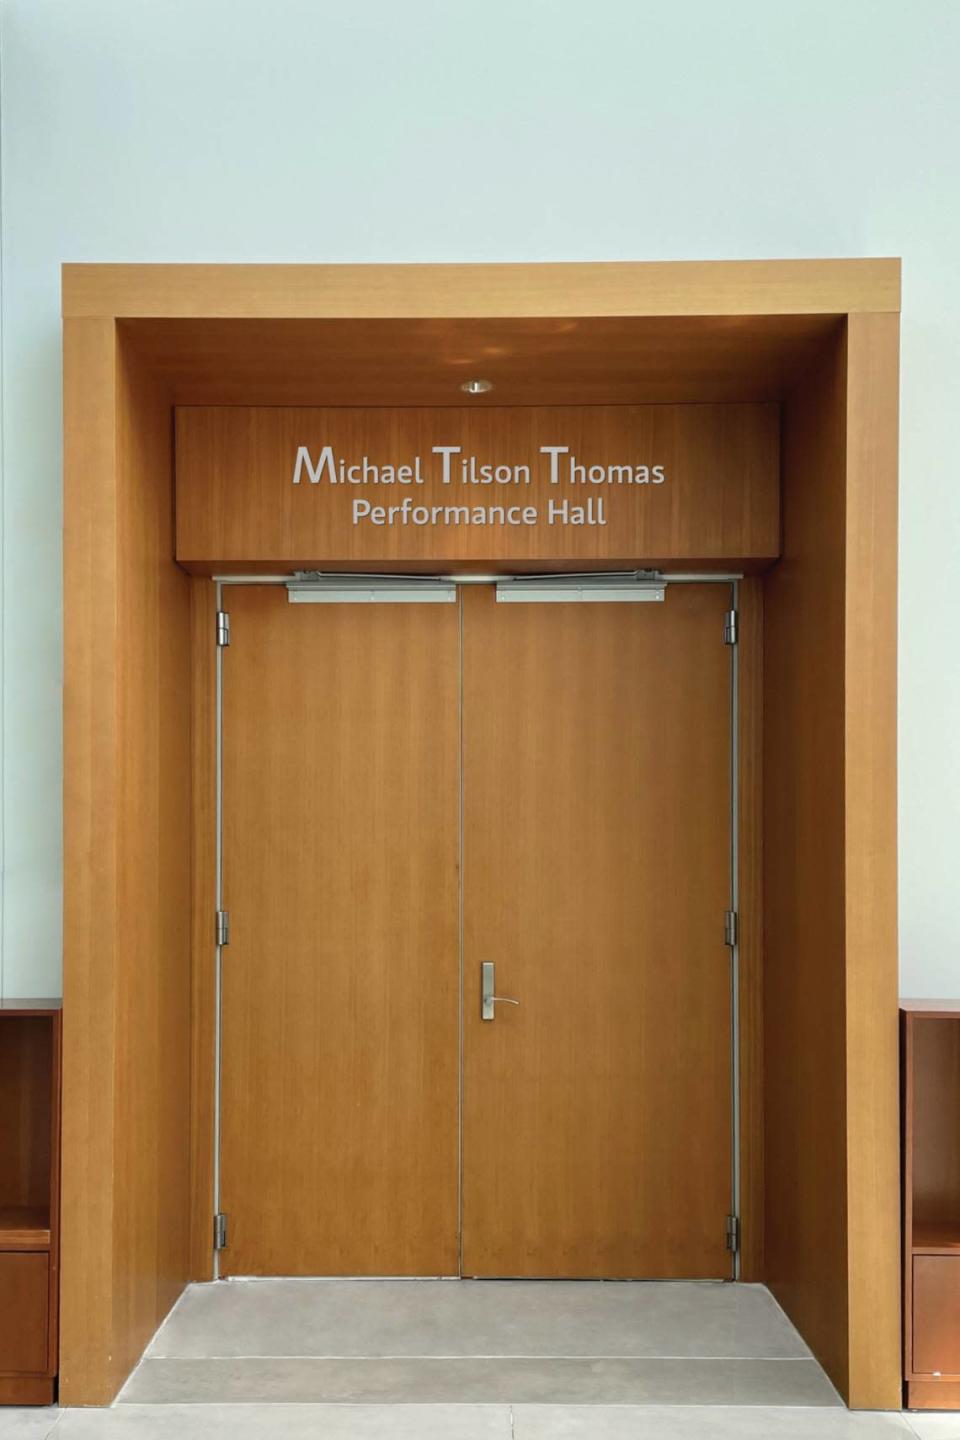 El espacio de conciertos del New World Center de Miami Beach fue bautizado como Michael Tilson Thomas Performance Hall en honor a su director art&#xed;stico fundador, Michael Tilson Thomas.